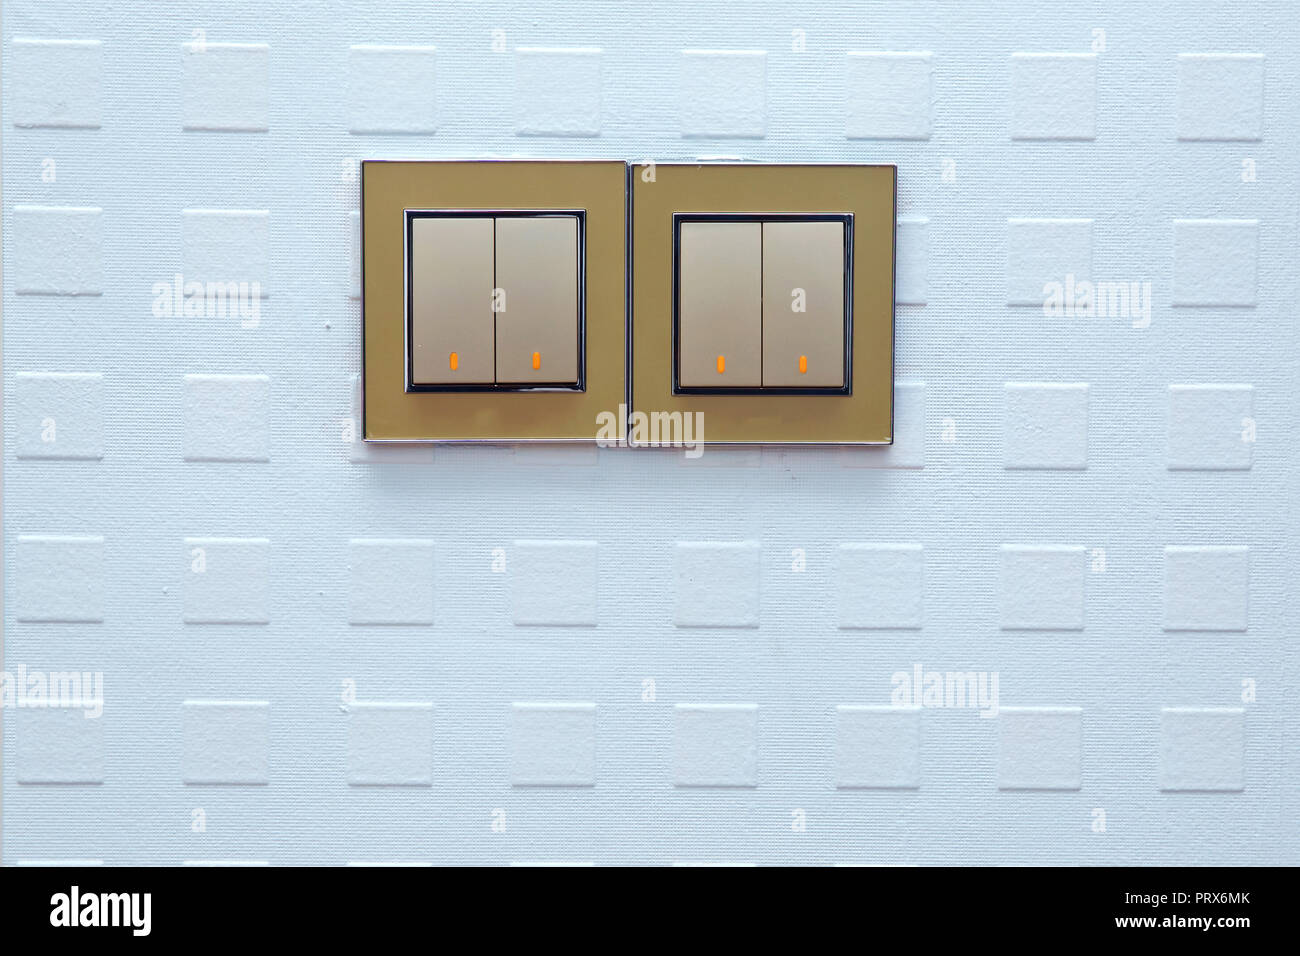 Interruptores De Luz Modernos En Una Pared Foto de archivo - Imagen de  panel, prensa: 198610042